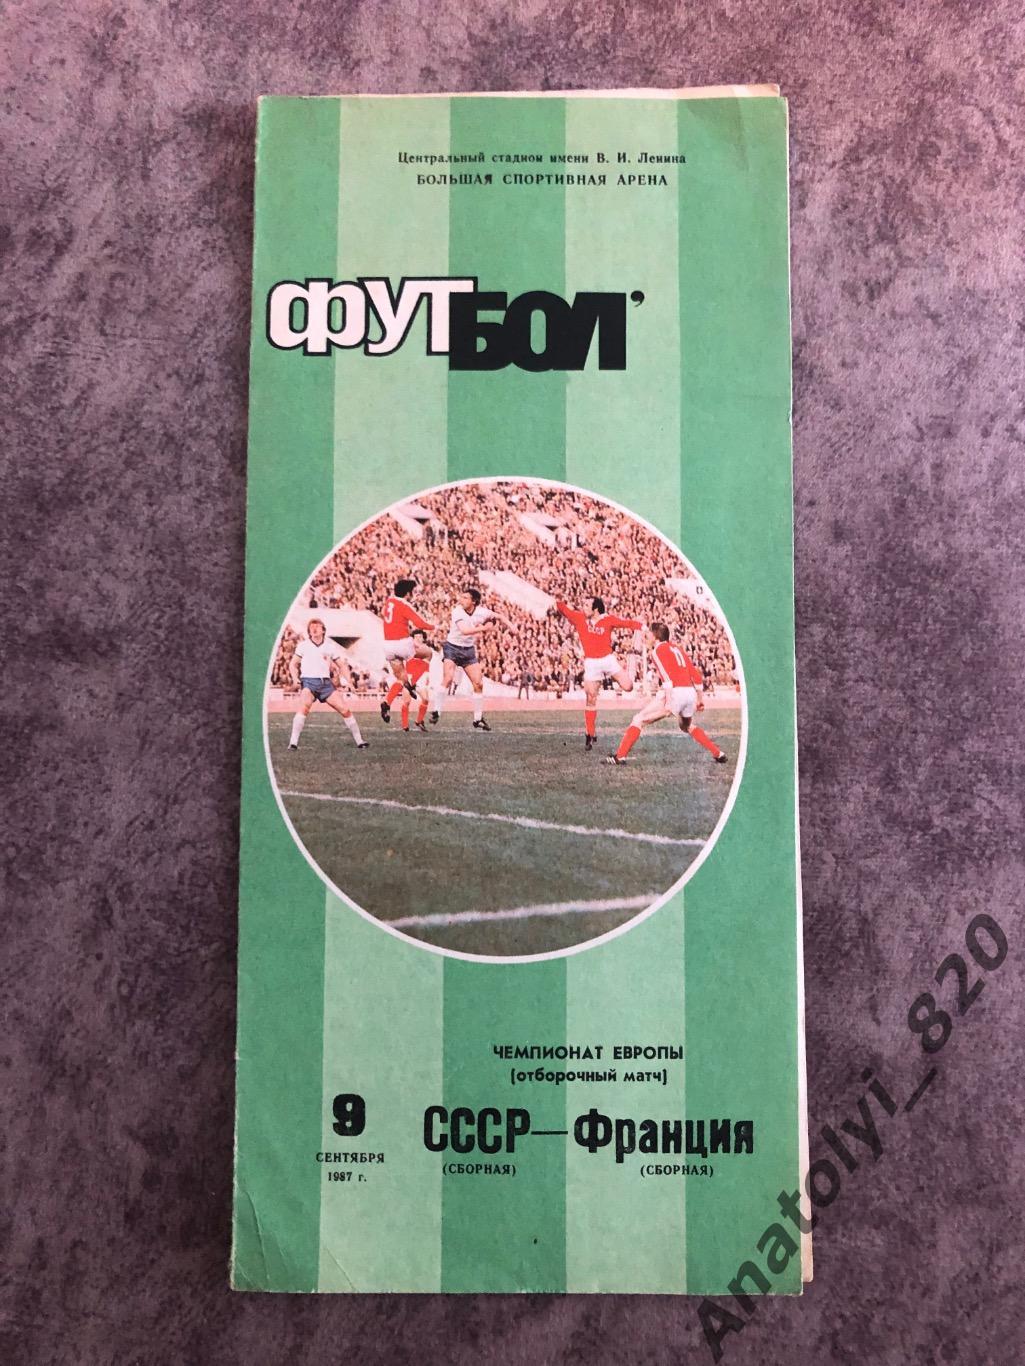 Сборная СССР - сборная Франции, 09.09.1987